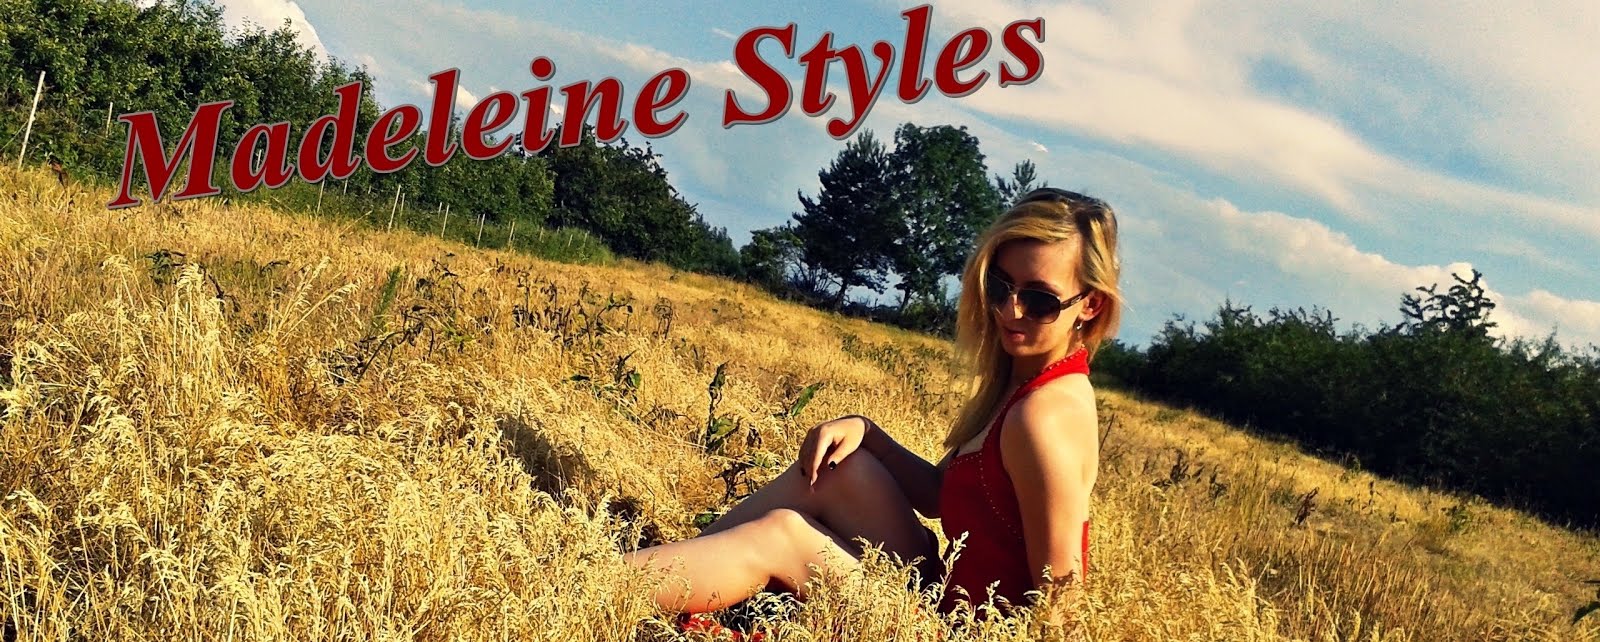 Madeleine Styles